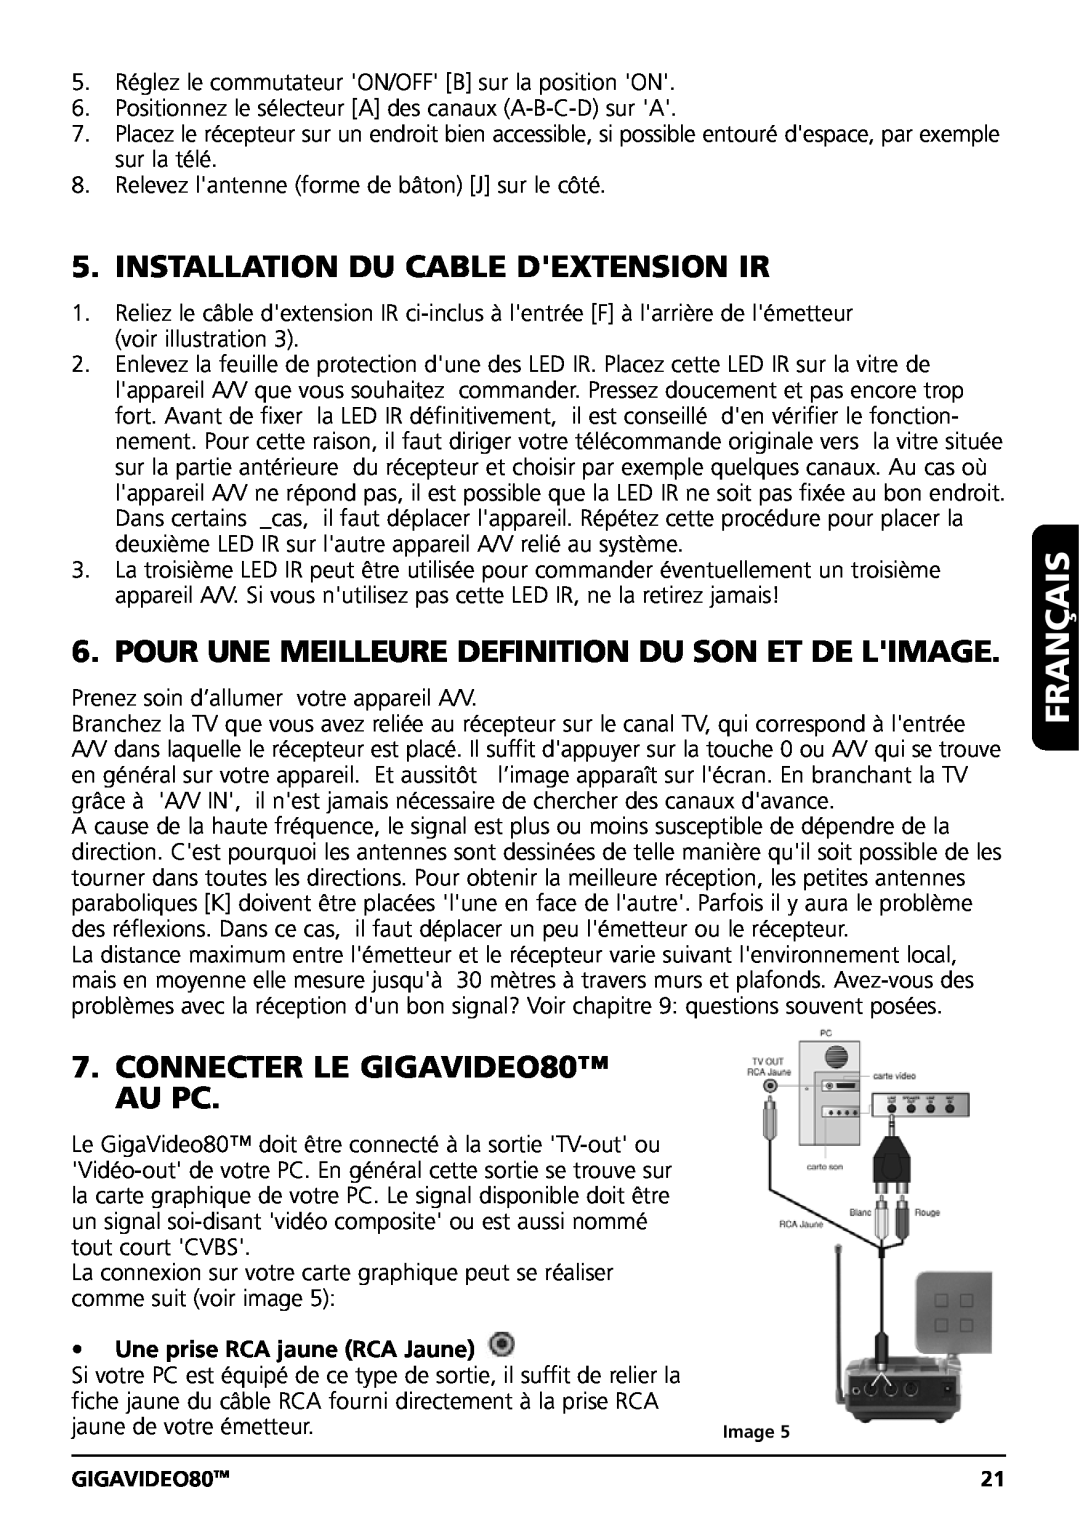 Marmitek GIGAVIDEO80 Installation Du Cable Dextension Ir, Pour Une Meilleure Definition Du Son Et De Limage, Français 